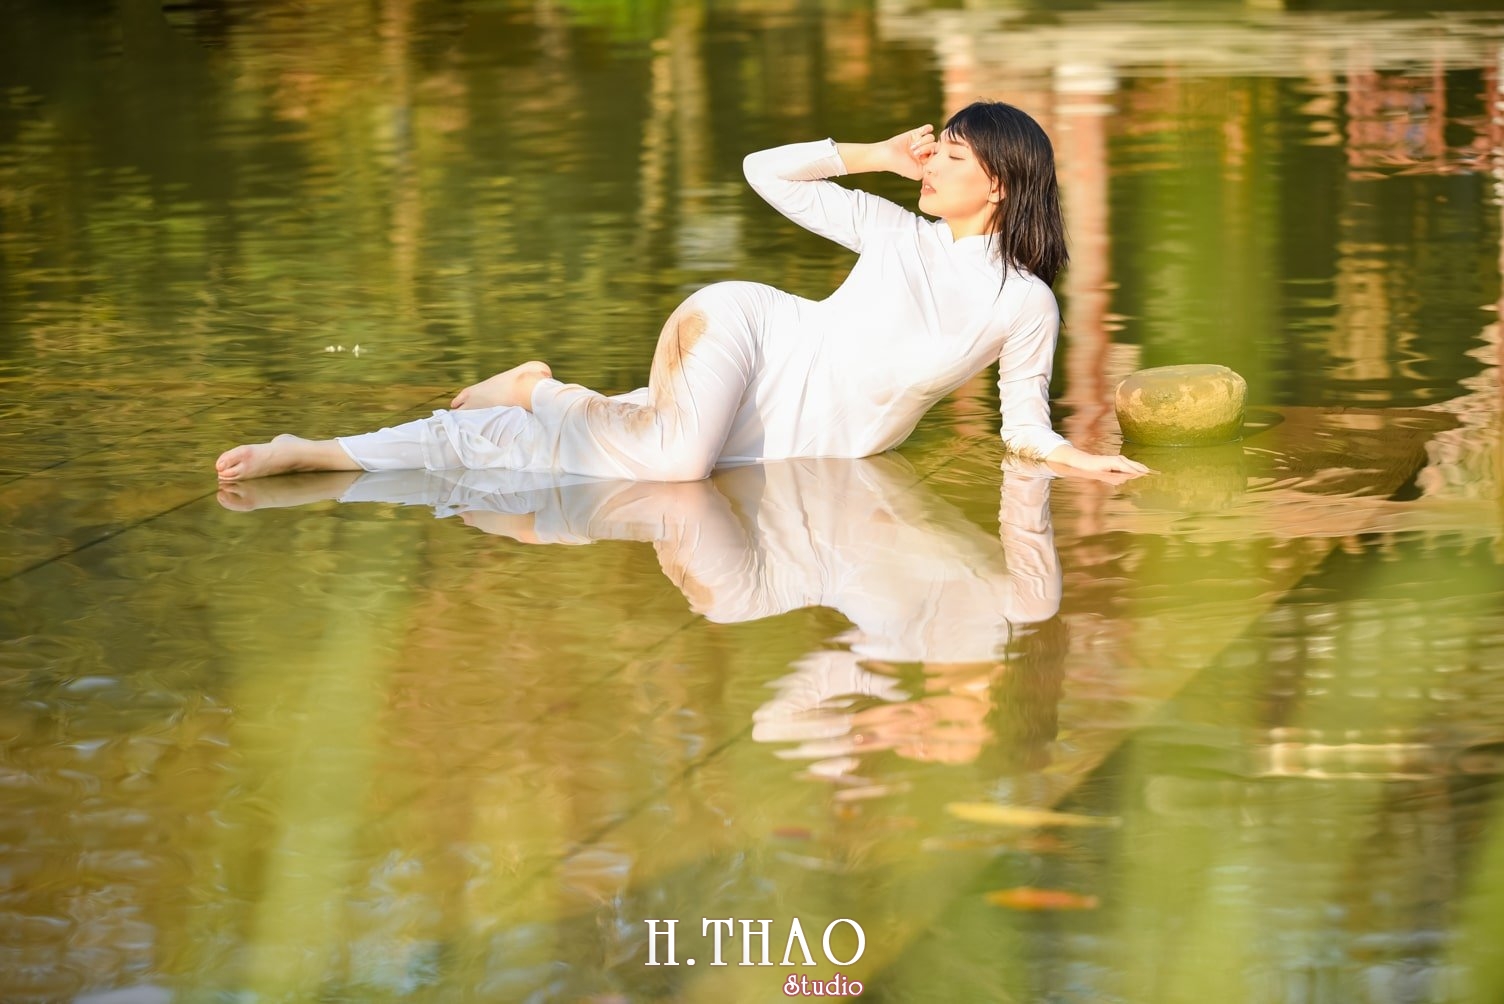 Anh ao dai 23 min - Album chụp ảnh tại bảo tàng áo dài quận 9 đẹp lung linh - HThao Studio